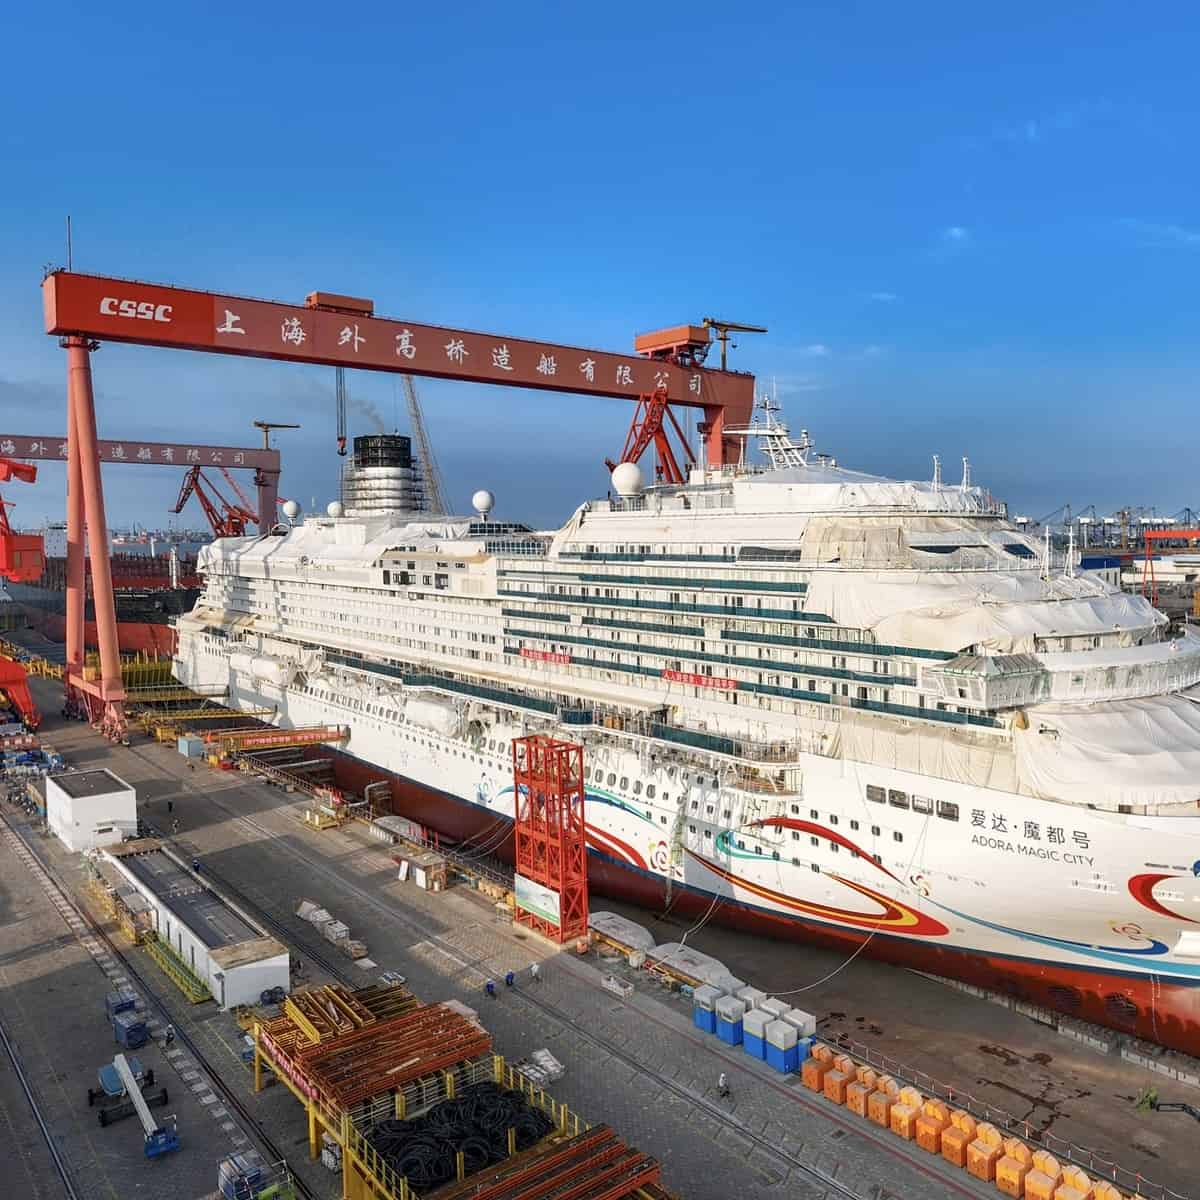 En Shanghai gran crucero chino de construcción nacional